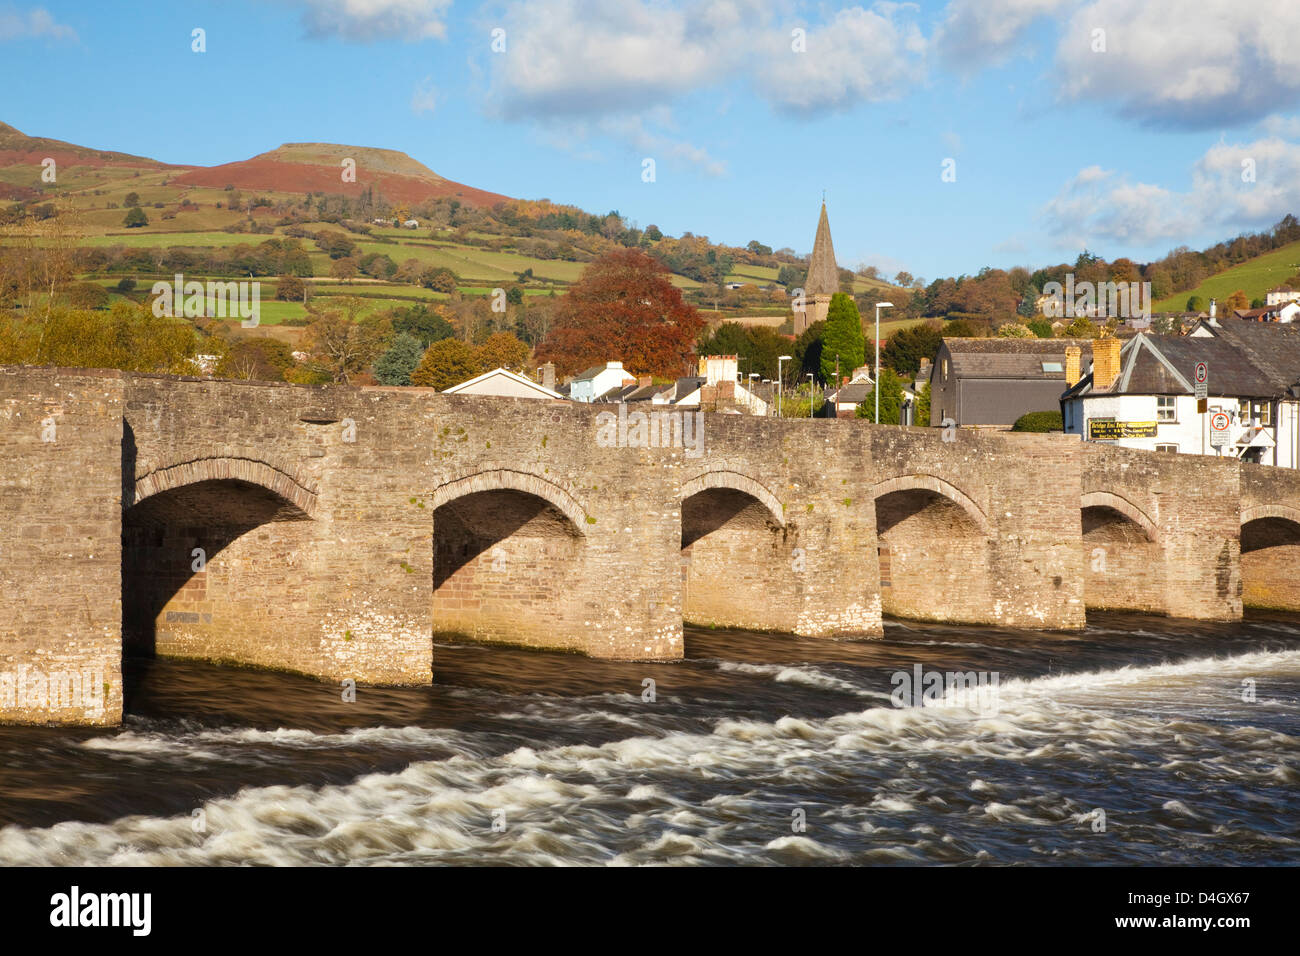 Puente sobre el río Usk, Crickhowell, Powys, Gales, Reino Unido Foto de stock